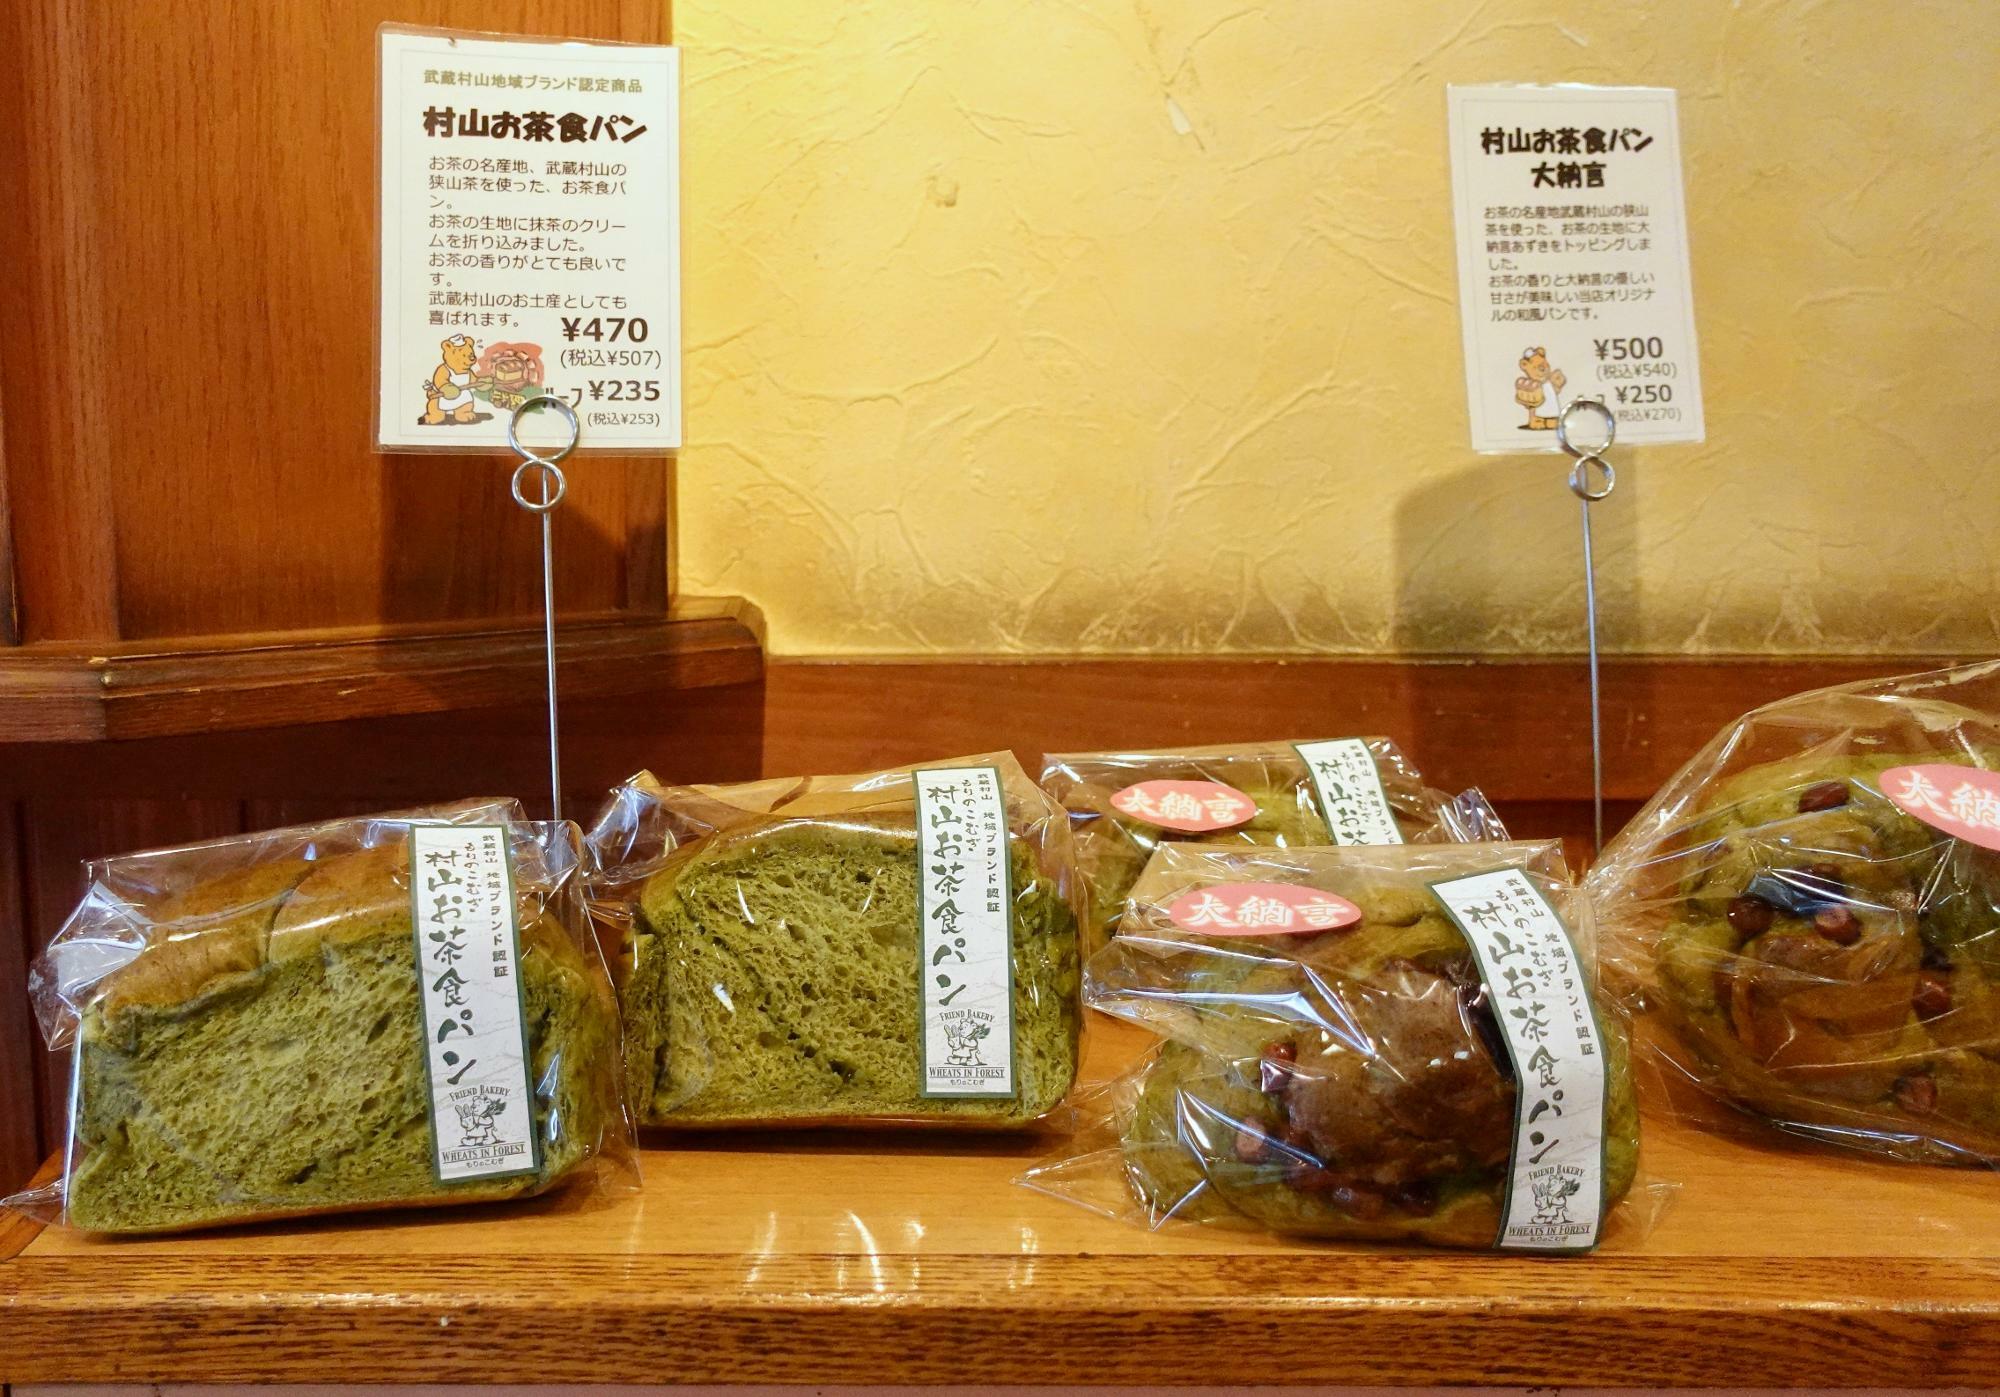 武蔵村山地域ブランド認証商品「村山お茶食パン」もあります